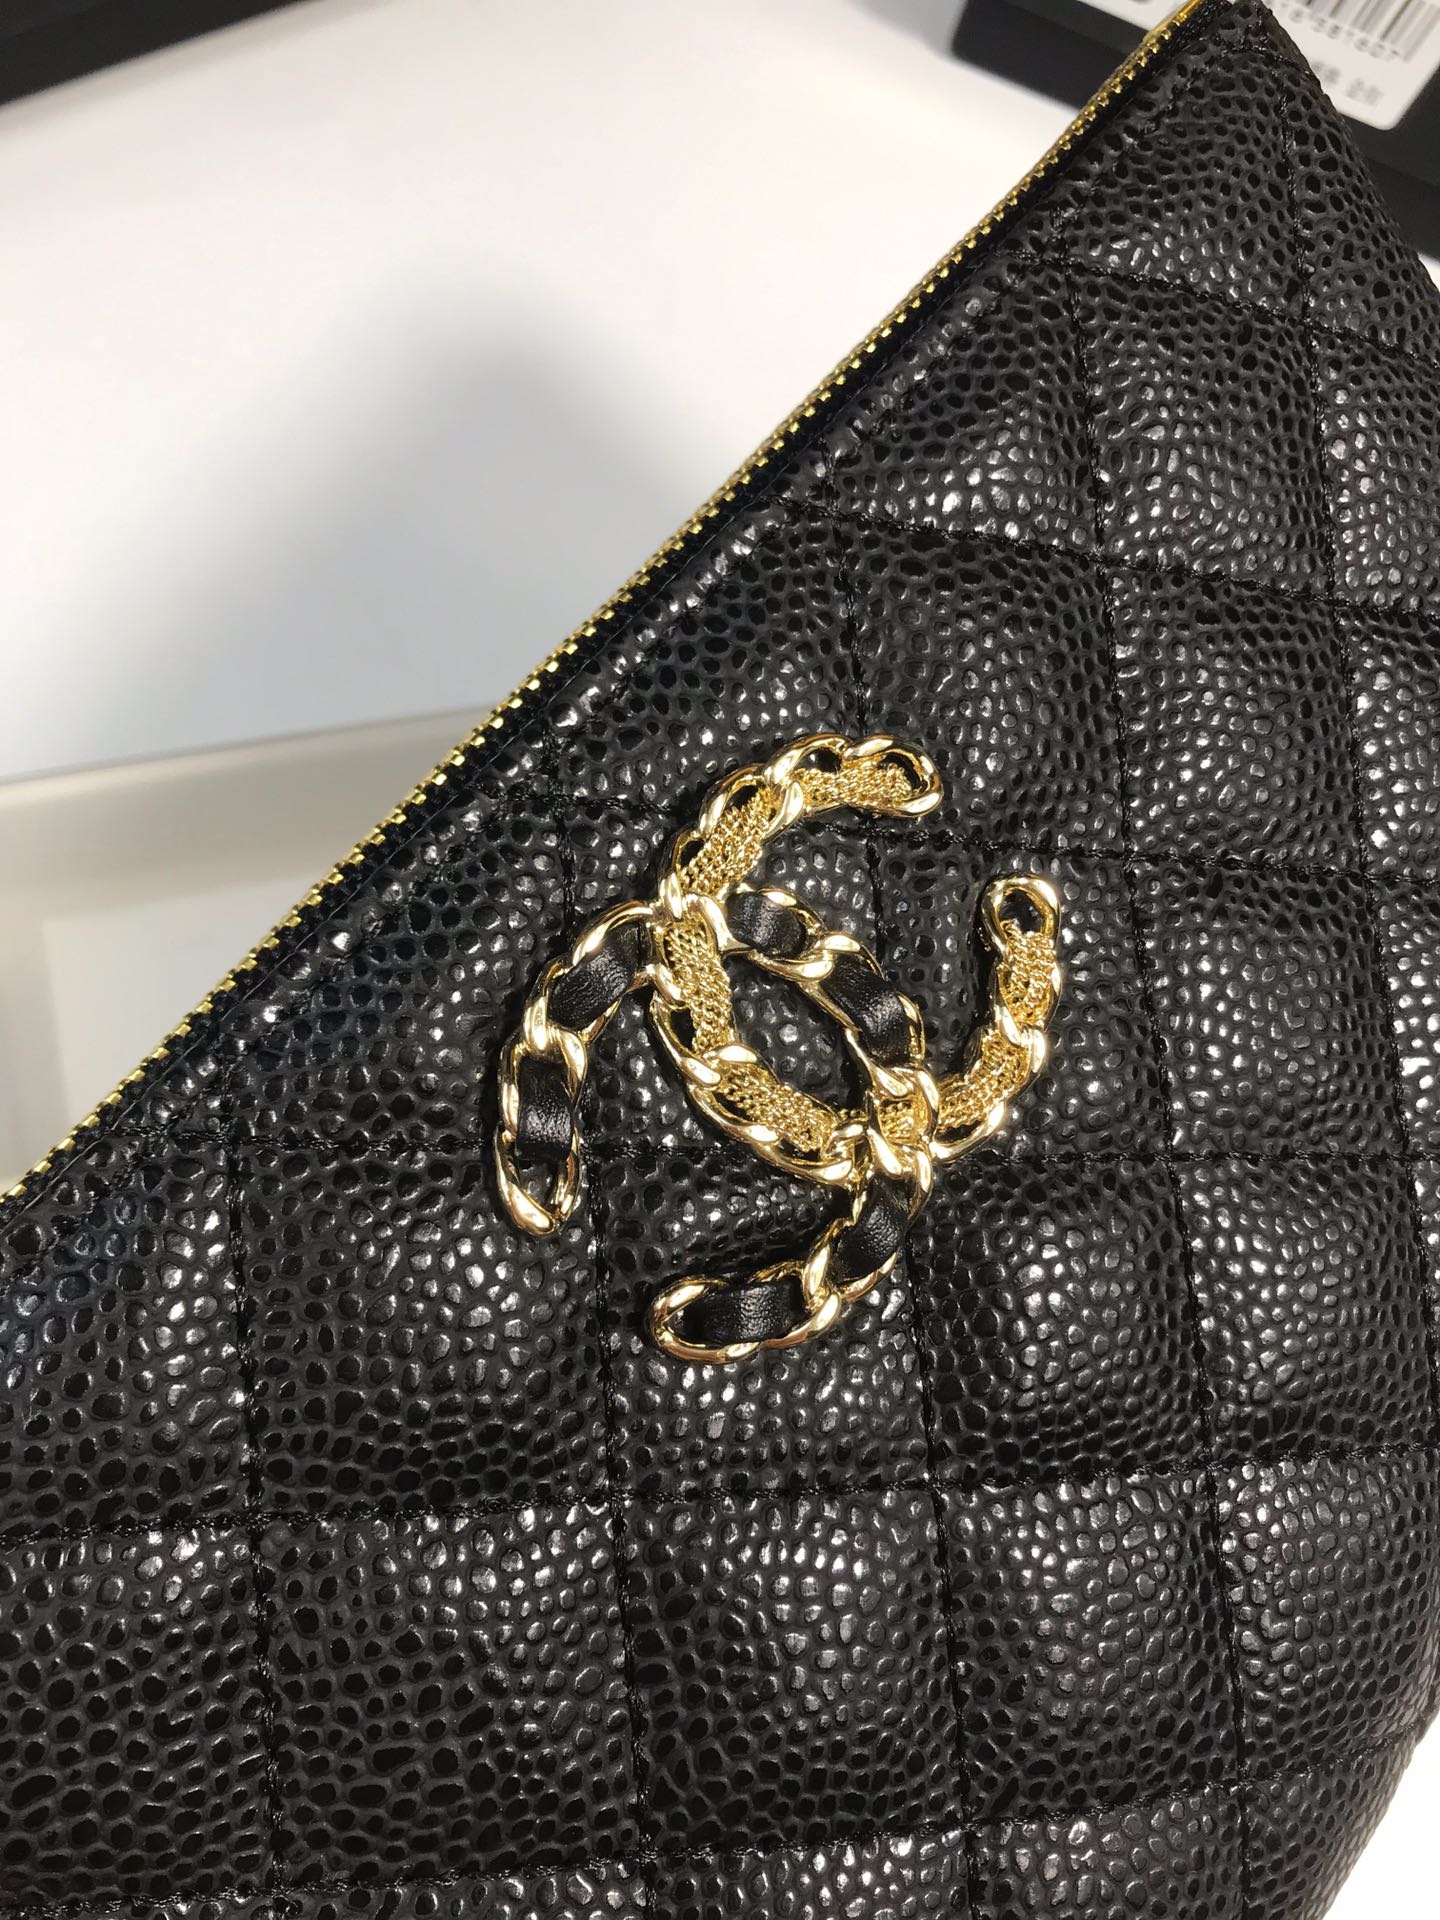 Chanel 高貴菱格紋手拿包